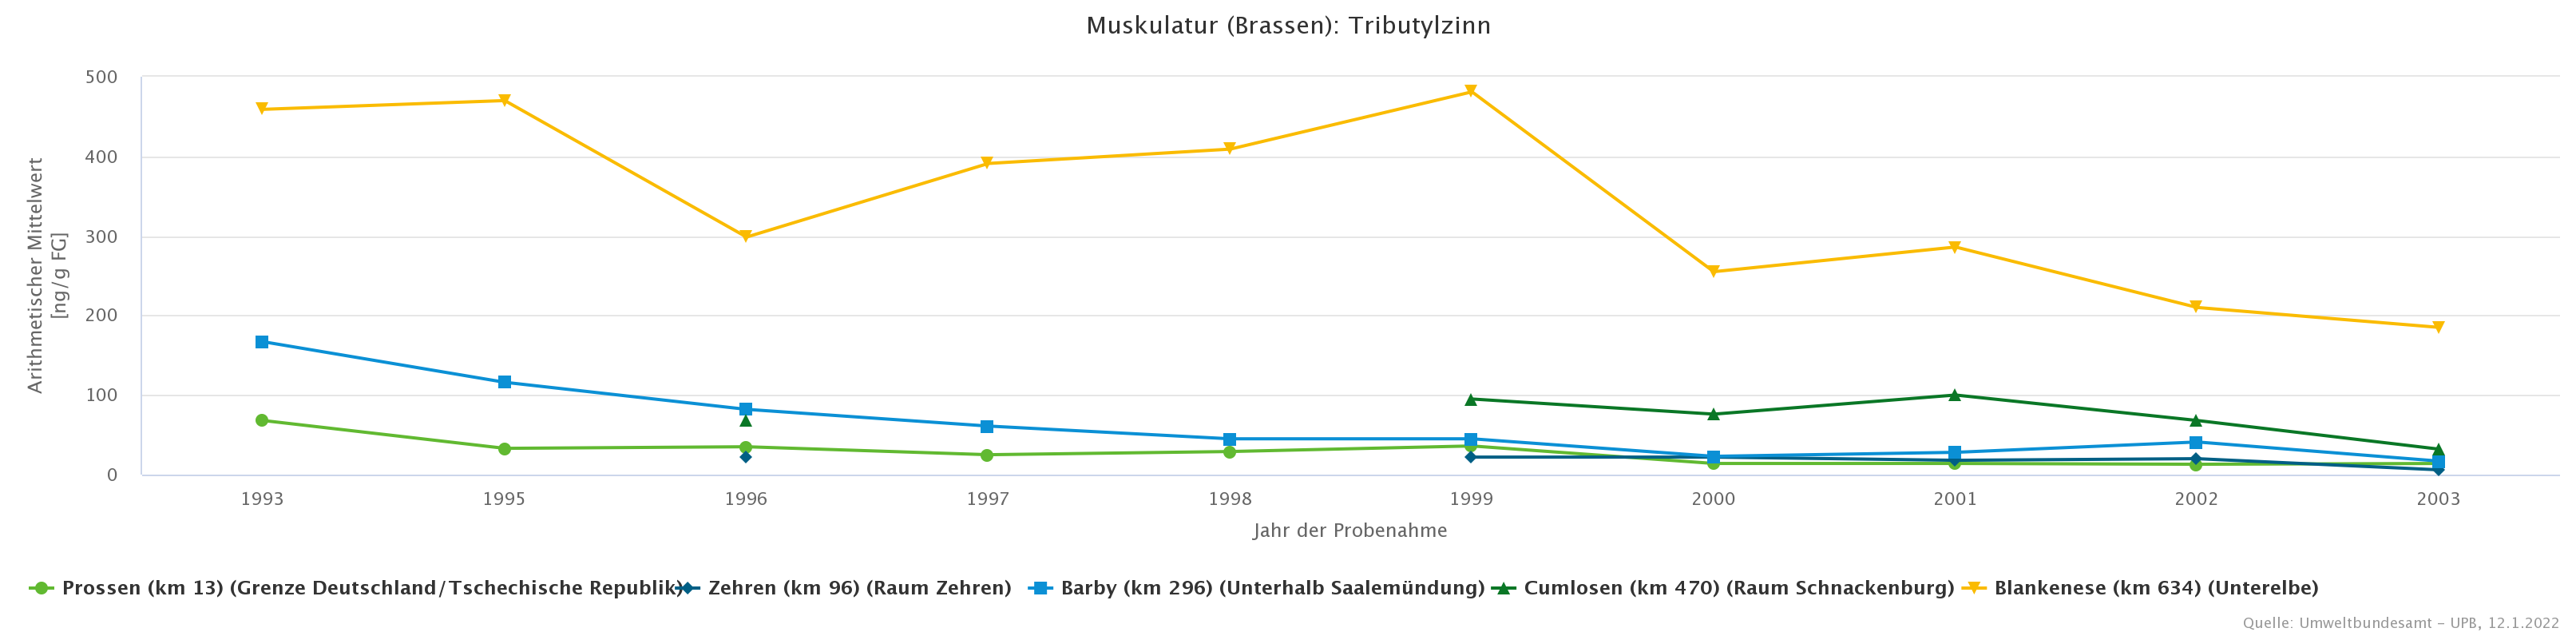 Abnehmende TBT-Belastung von Brassen zwischen 1993 und 2003 um 50 bis 90%.